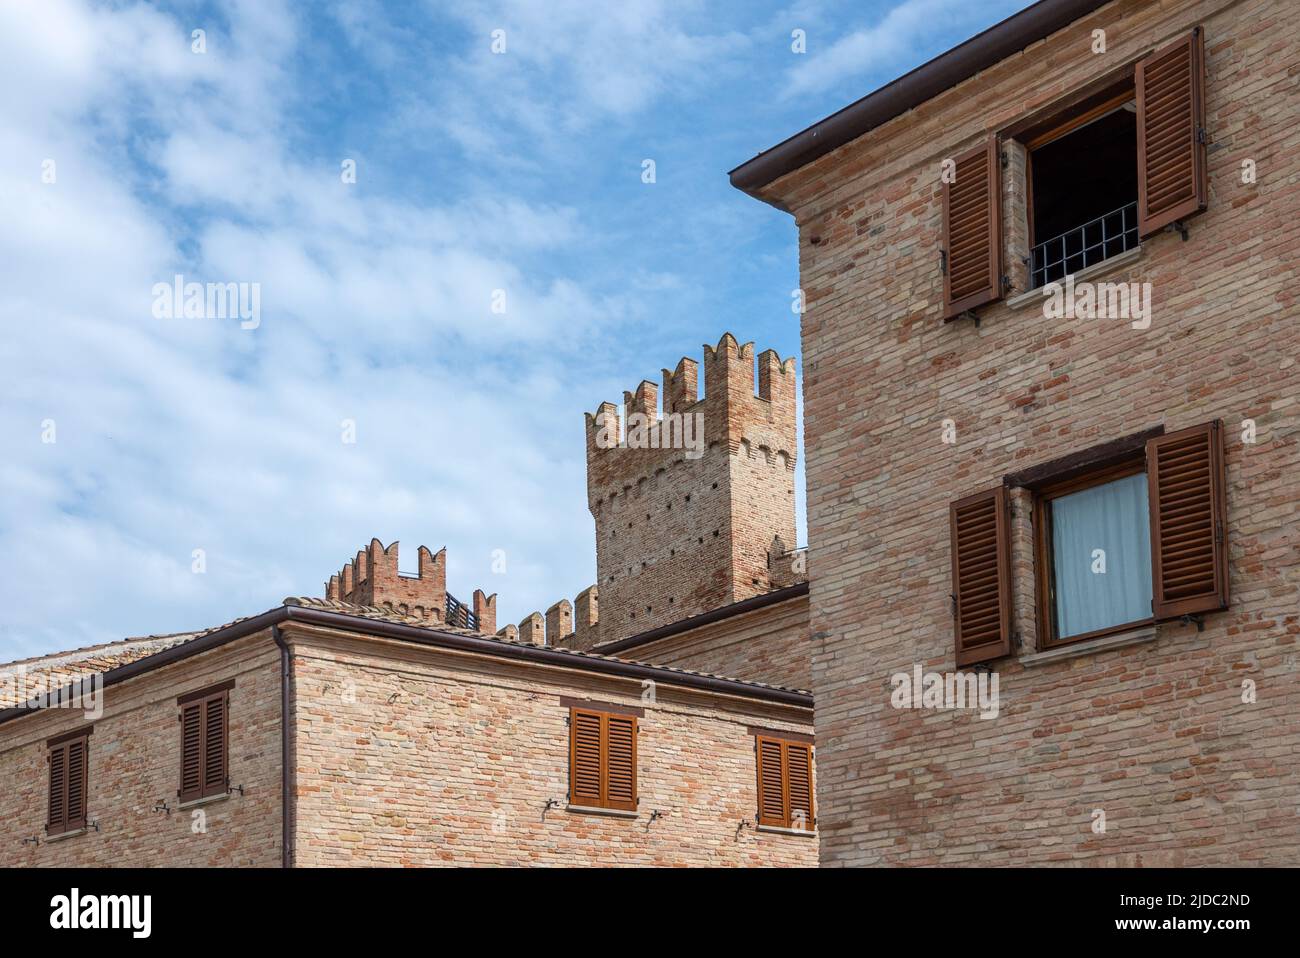 Gradara, Italia, con vistas a las tradicionales casas de ladrillo con las torres de las murallas medievales en el fondo, Foto de stock